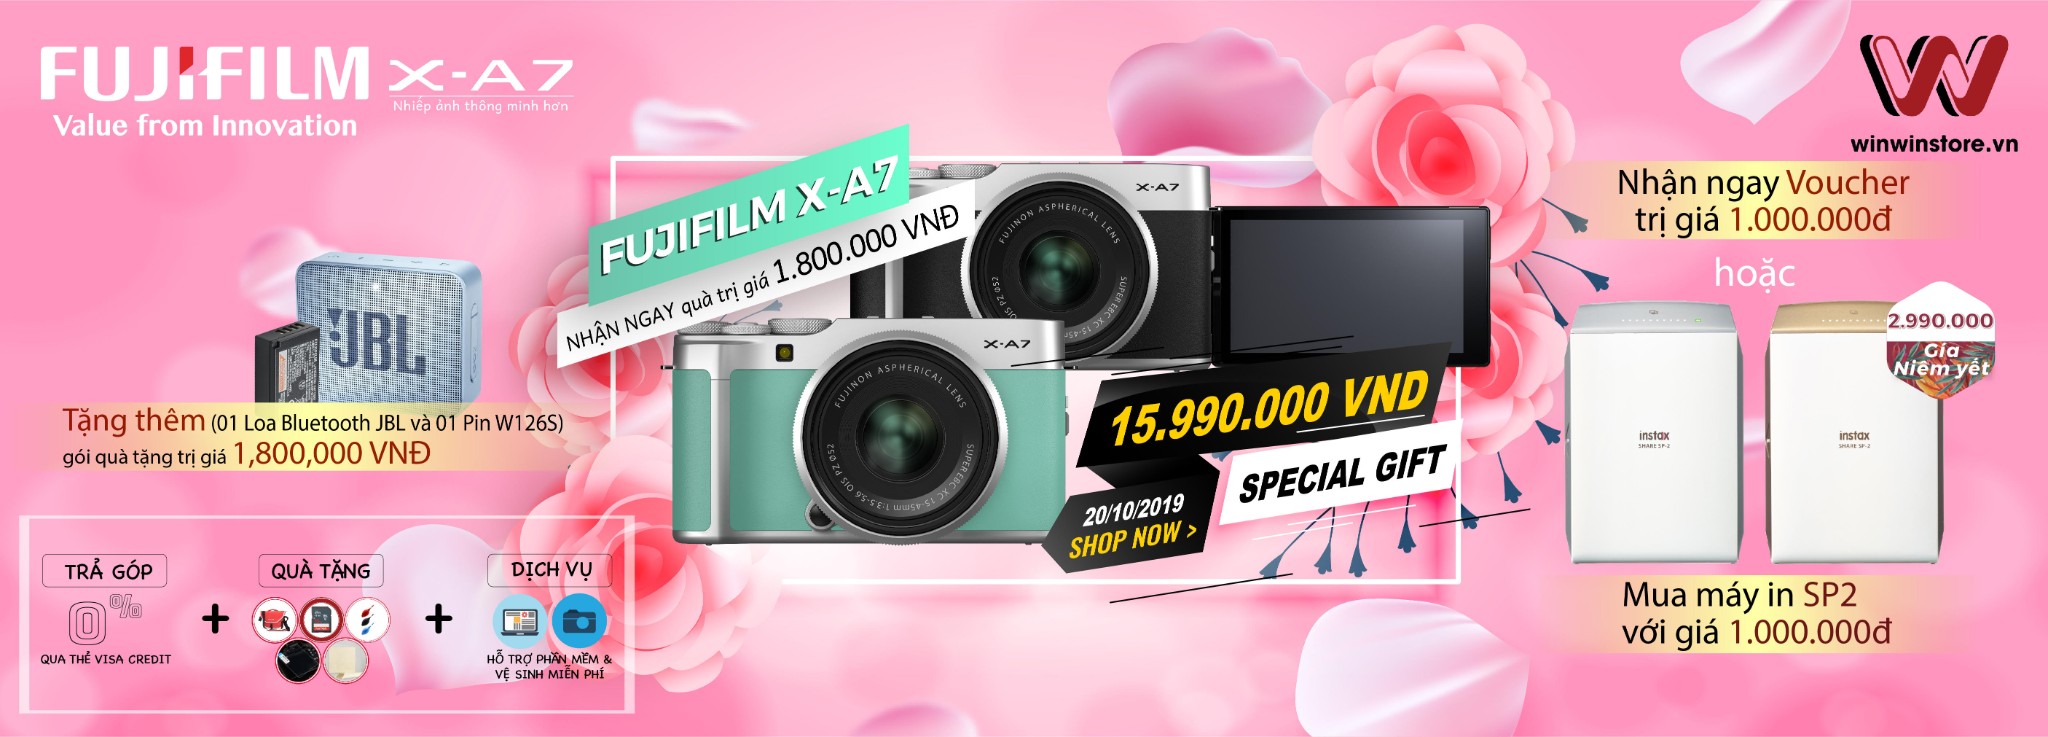 Fujifilm X-A7: Món quà dành cho phái nữ với nhiều phần quà hấp dẫn từ WinWin Store